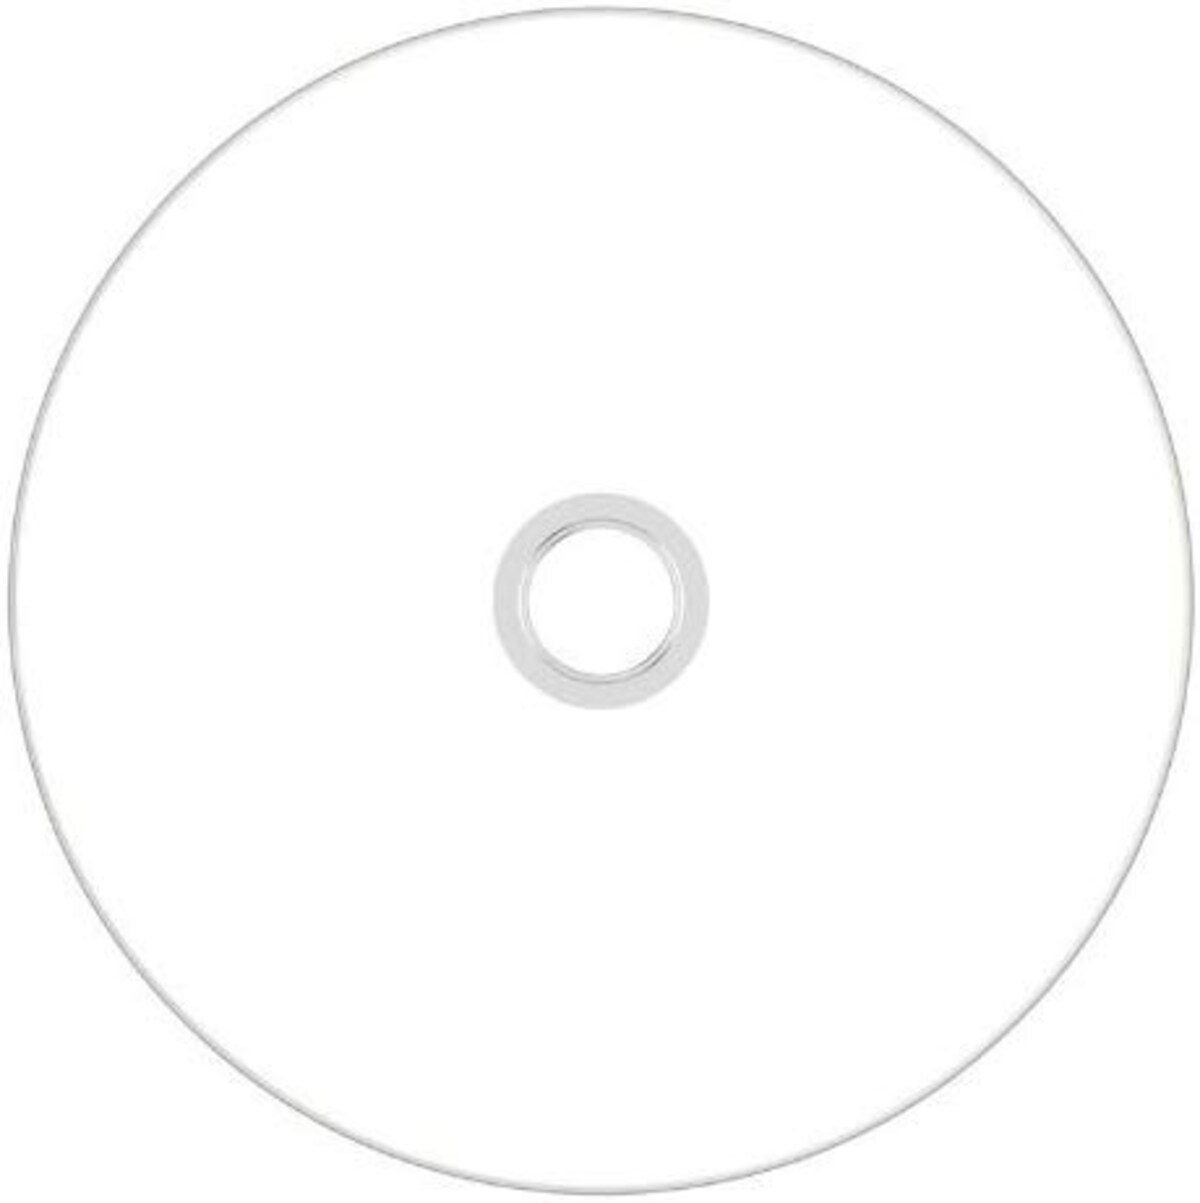   音楽用 CD-R 50枚 ホワイトプリンタブル画像2 